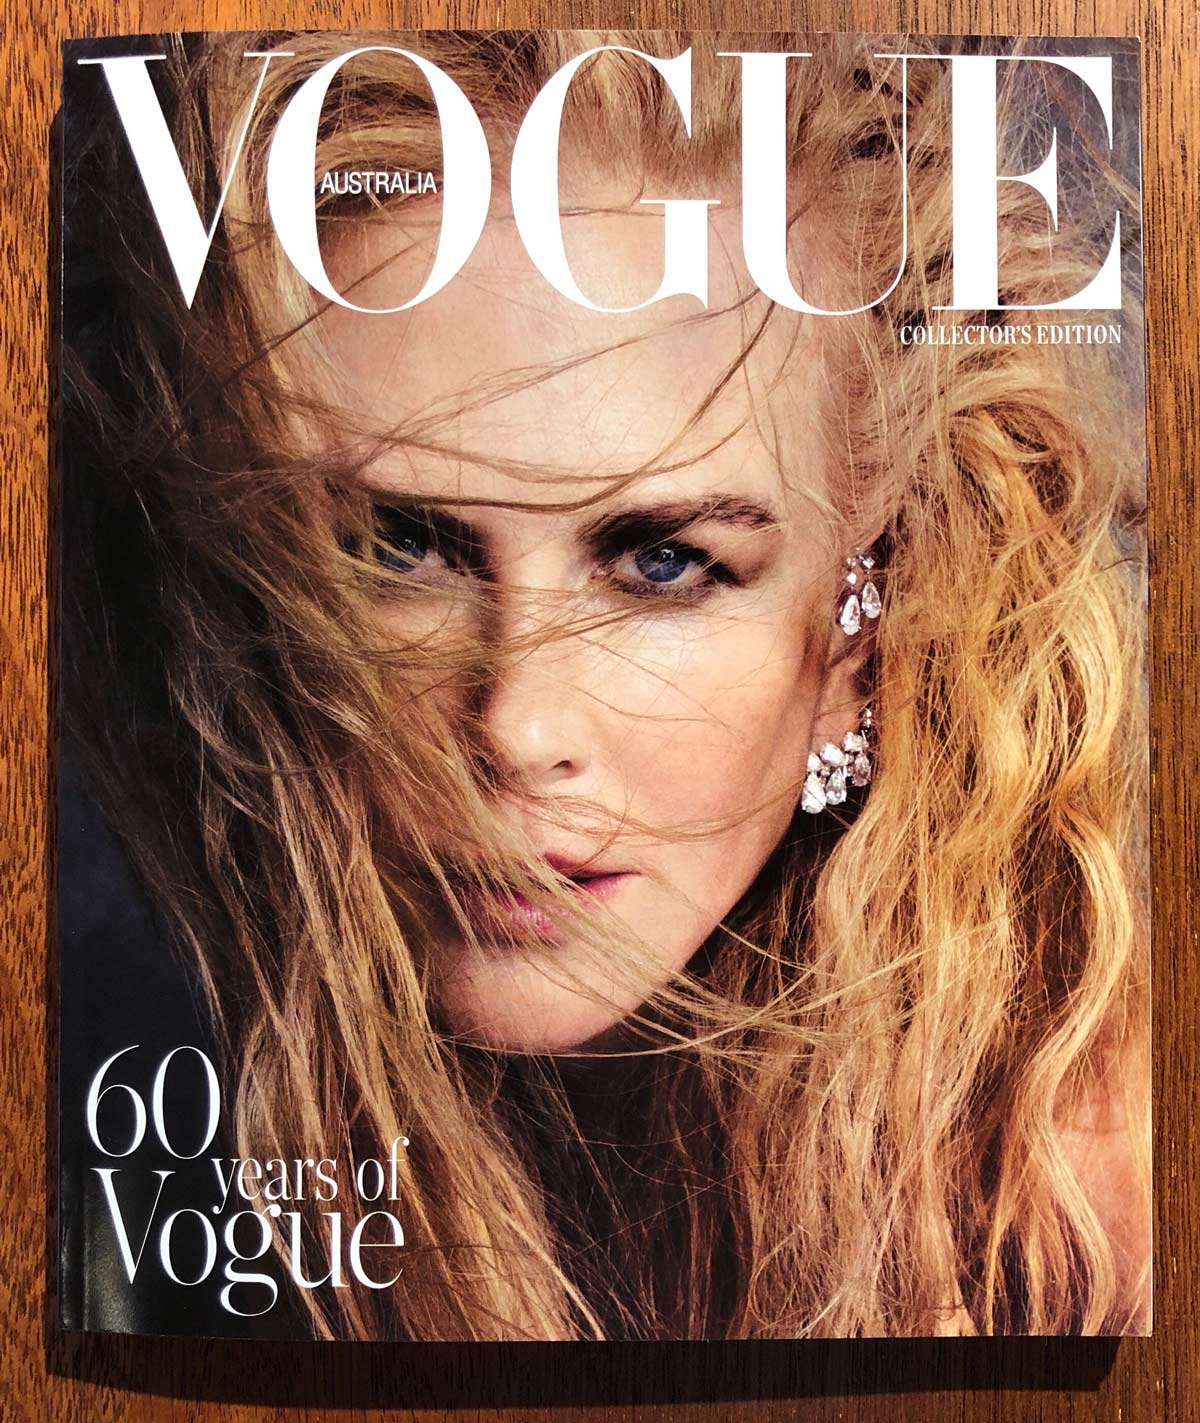 Vogue Australia December 2019 cover